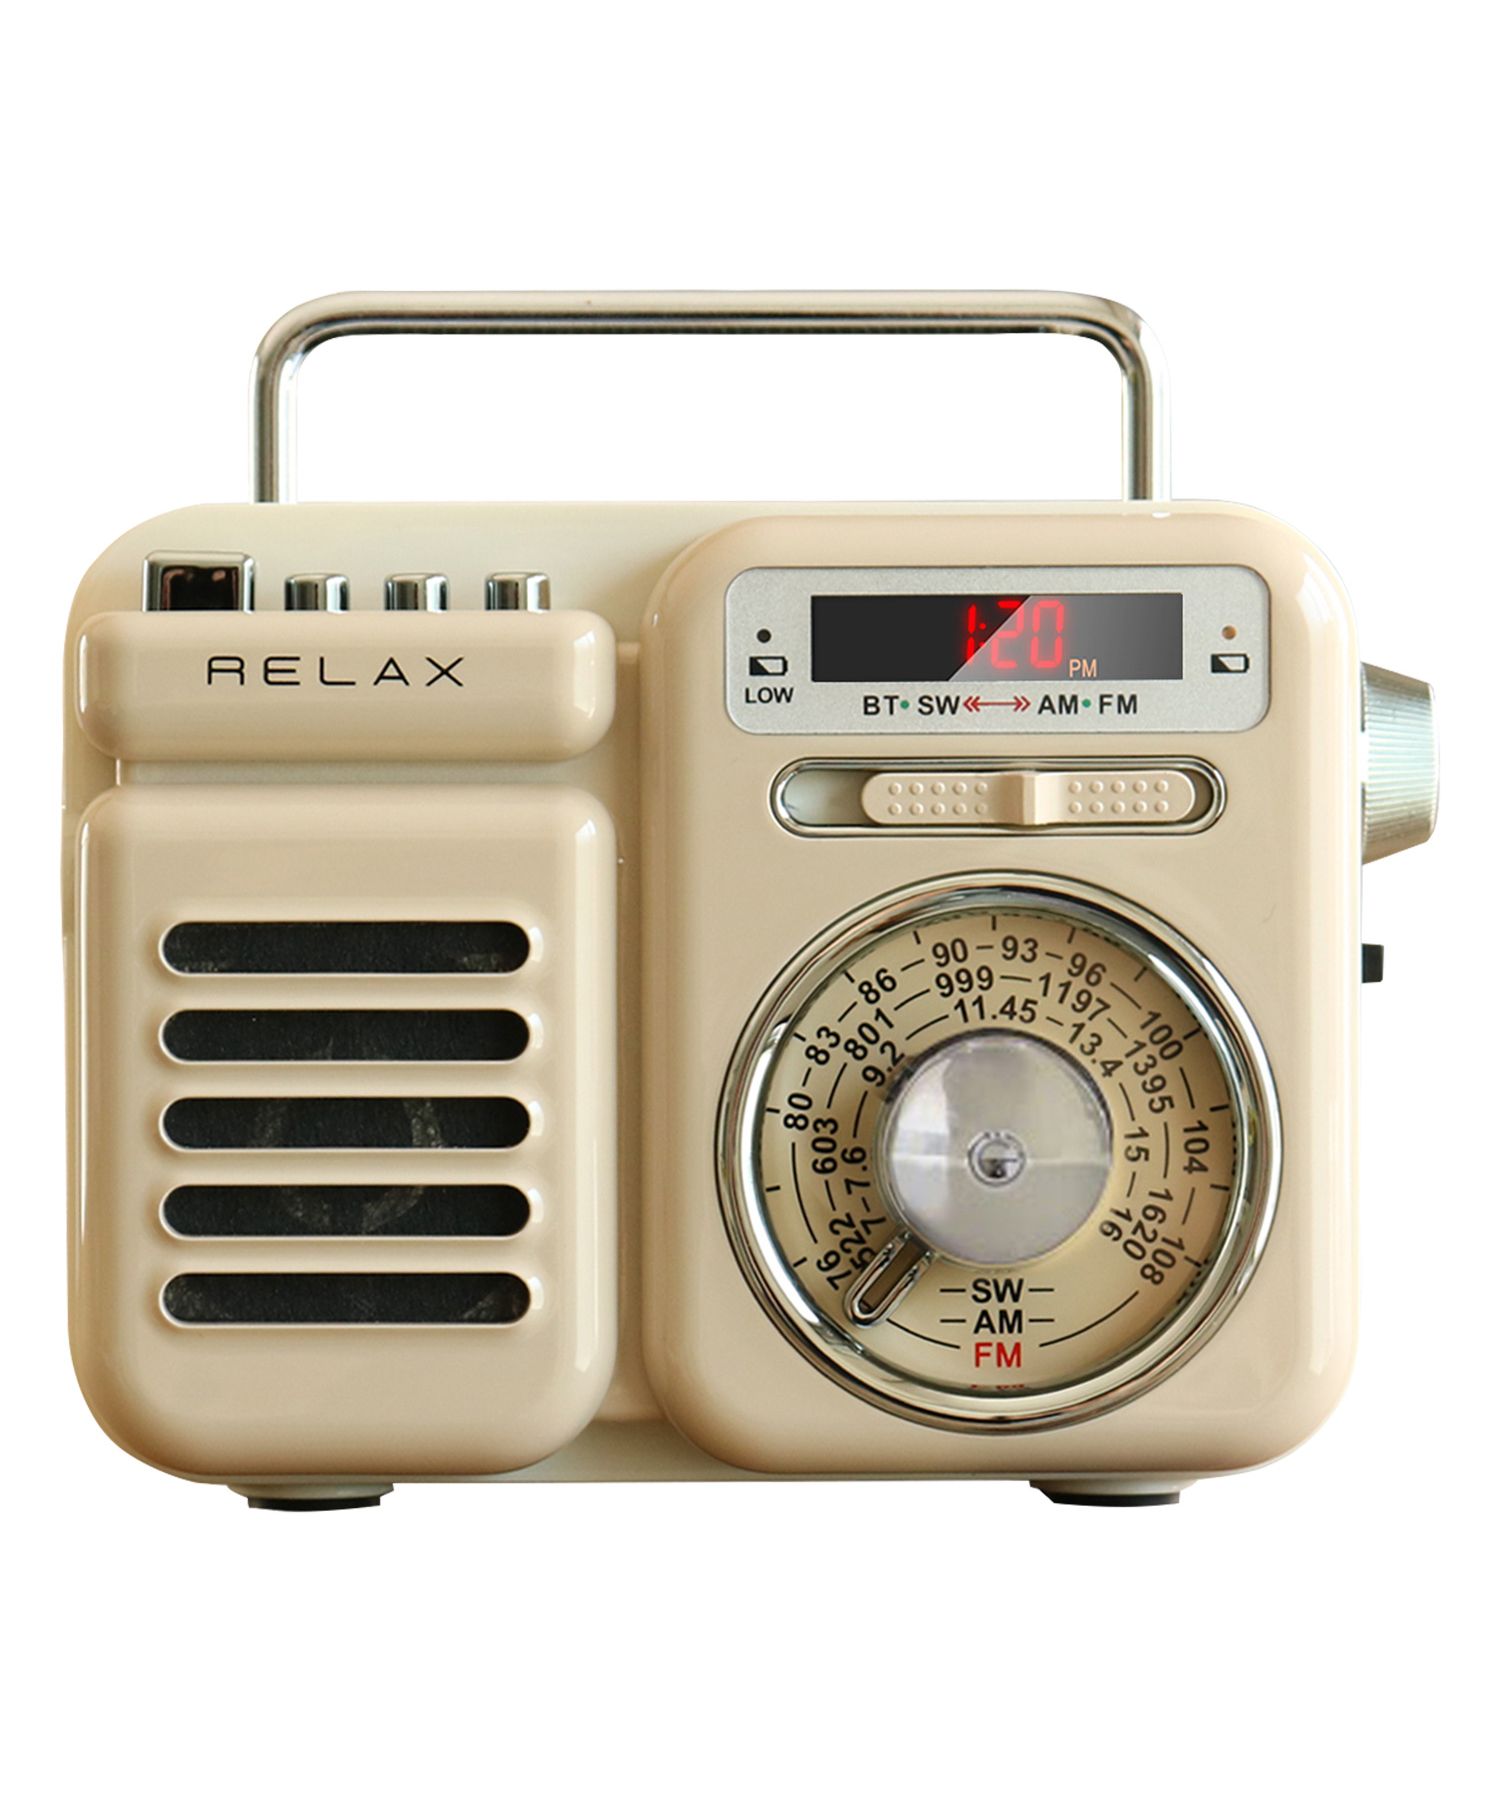 RELAX リラックス マルチ レトロ ラジオ 小型 携帯 防災用品 ライト